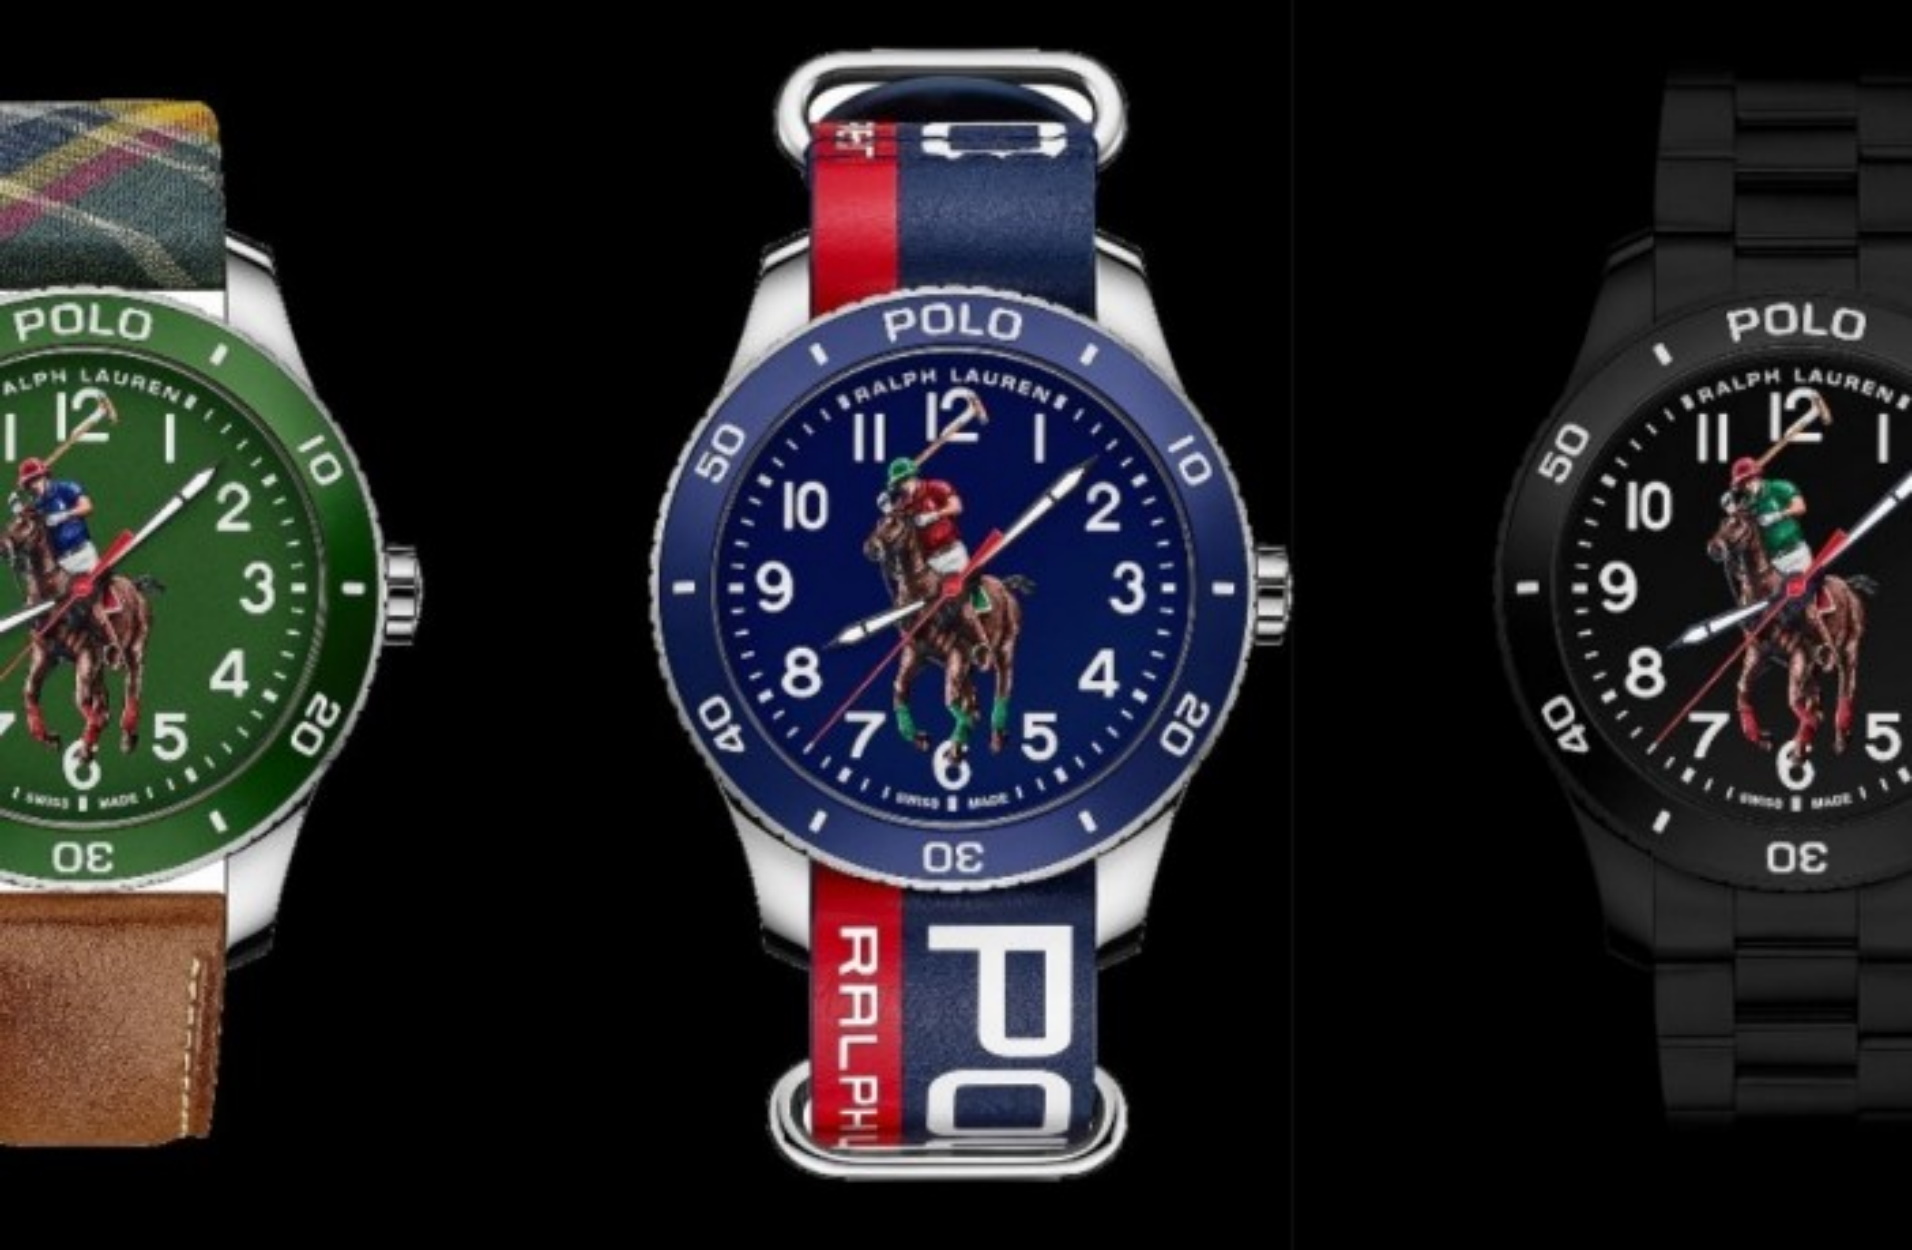 Ο Ralph Lauren μόλις κυκλοφόρησε μια συλλογή από 4 πανέμορφα ρολόγια